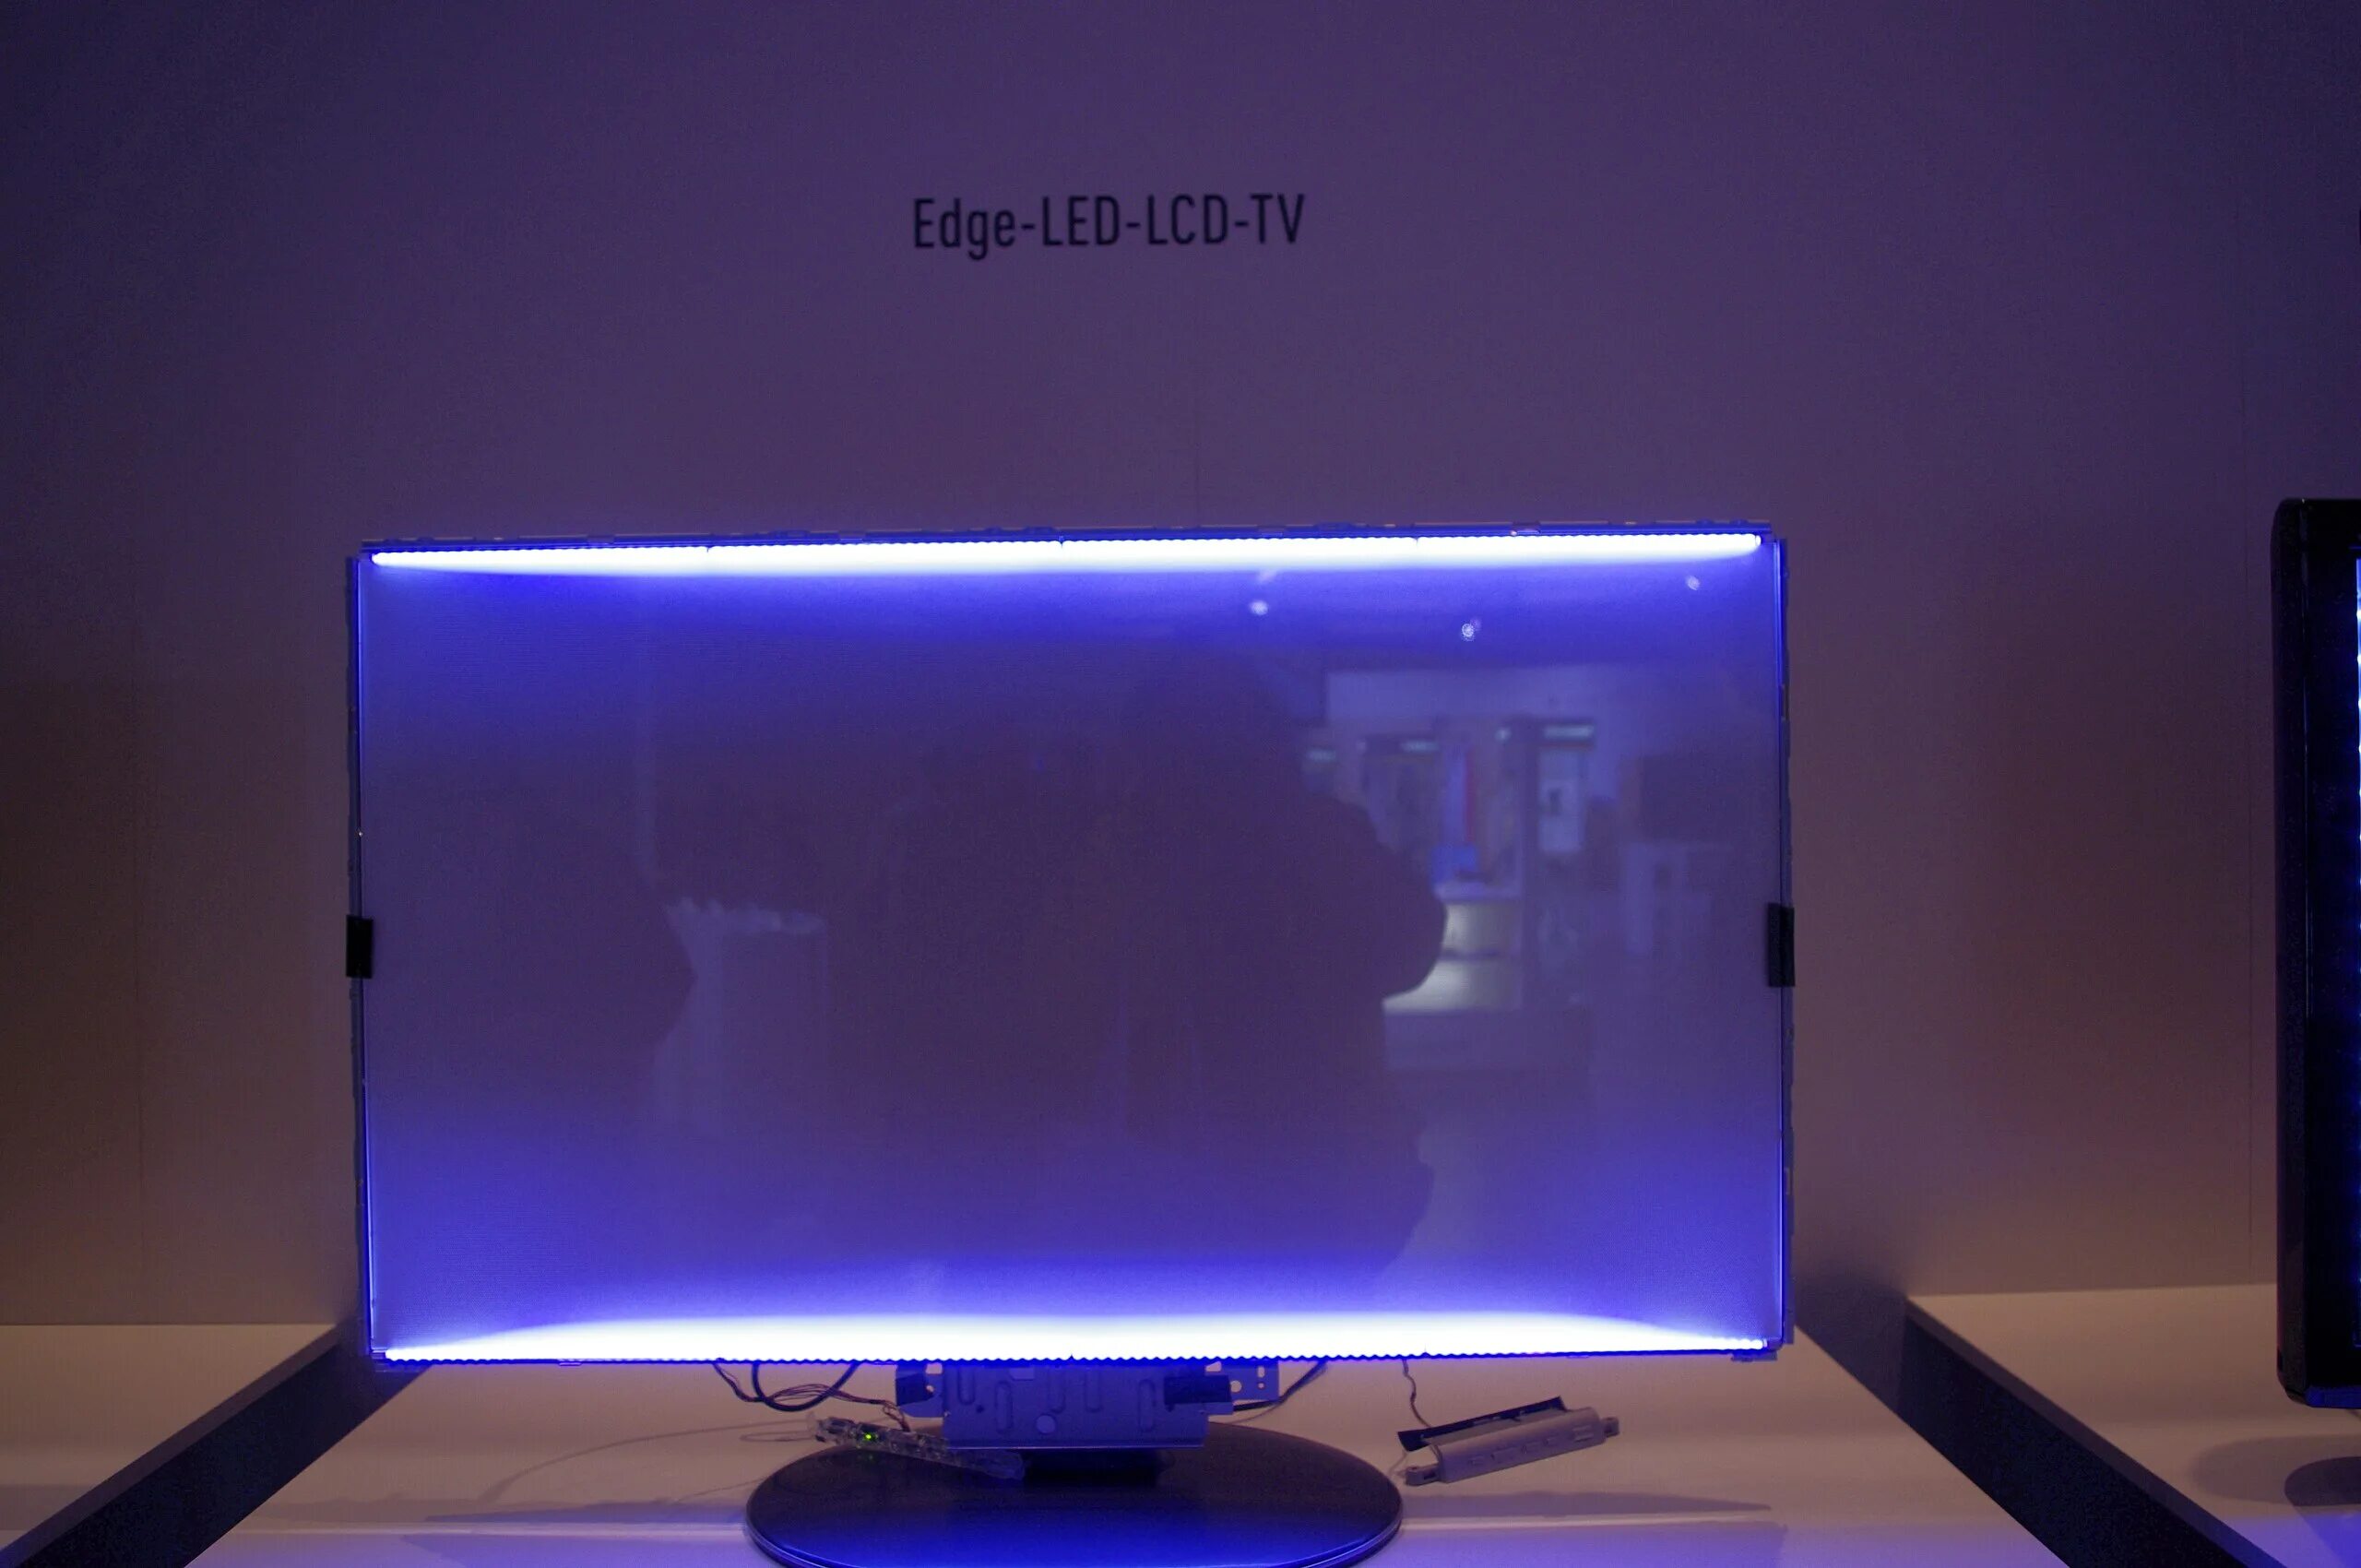 Edge led подсветка Samsung. Подсветка Edge led что это такое в телевизоре. Тип светодиодной подсветки: Edge led. Подсветка direct led что это такое в телевизоре. Подсветка жк экрана